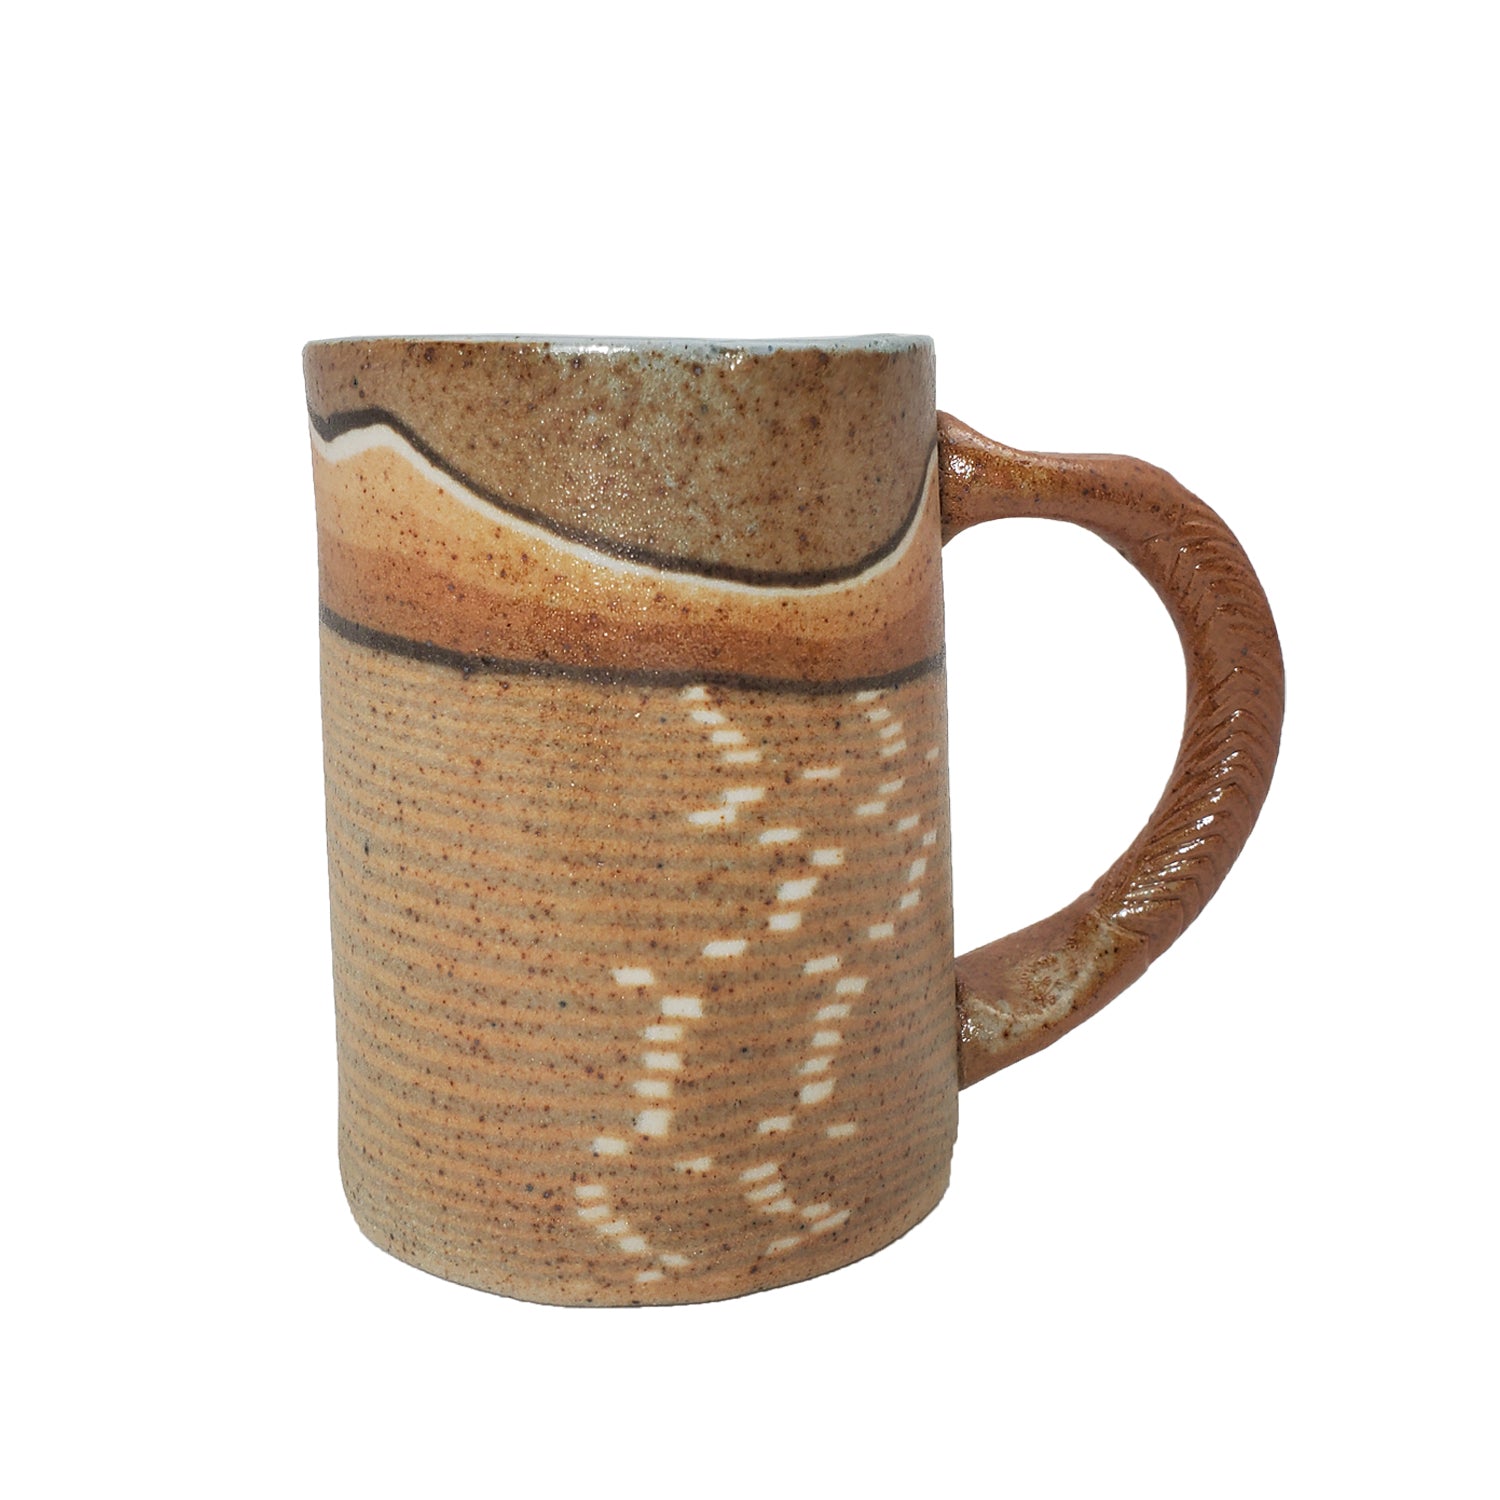 Mug, Teacup, or Demitassee - Landscape